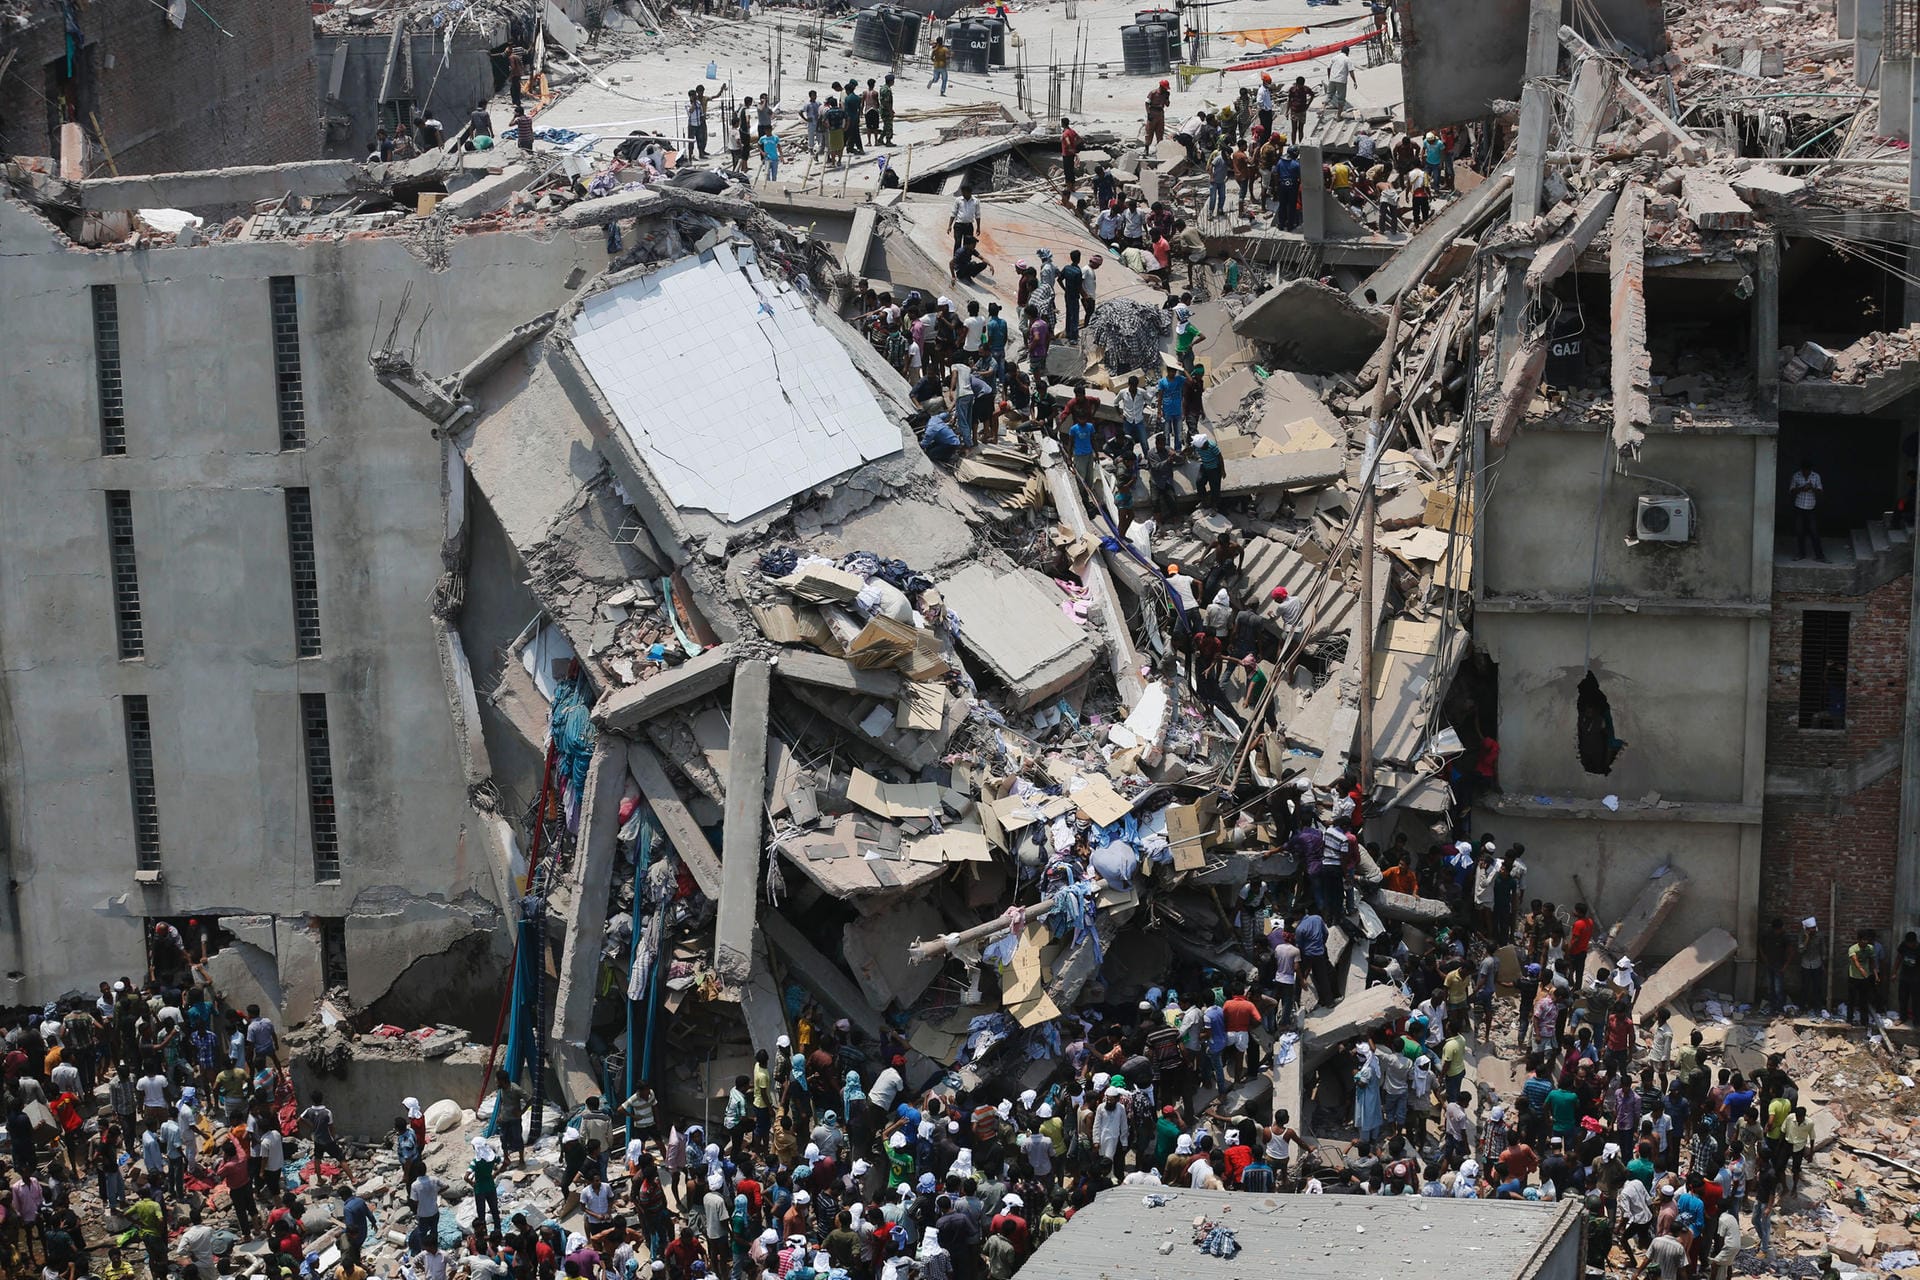 24. April 2013: Helfer retten Näherinnen und Näher aus den Trümmern des eingestürzten Rana-Plaza-Gebäudes bei Dhaka (Bangladesch). Bei dem Unglück kommen mehr als 1.100 Menschen ums Leben. In dem achtstöckigen Hochhaus waren Fabriken und ein Shoppingcenter untergebracht, auch europäische Modekonzerne hatten dort Kleidung produzieren lassen. Das Unglück gilt als das schwerste in der Geschichte Bangladeschs. Es löste eine weltweite Debatte über die Arbeitsbedingungen in der Textilindustrie aus.